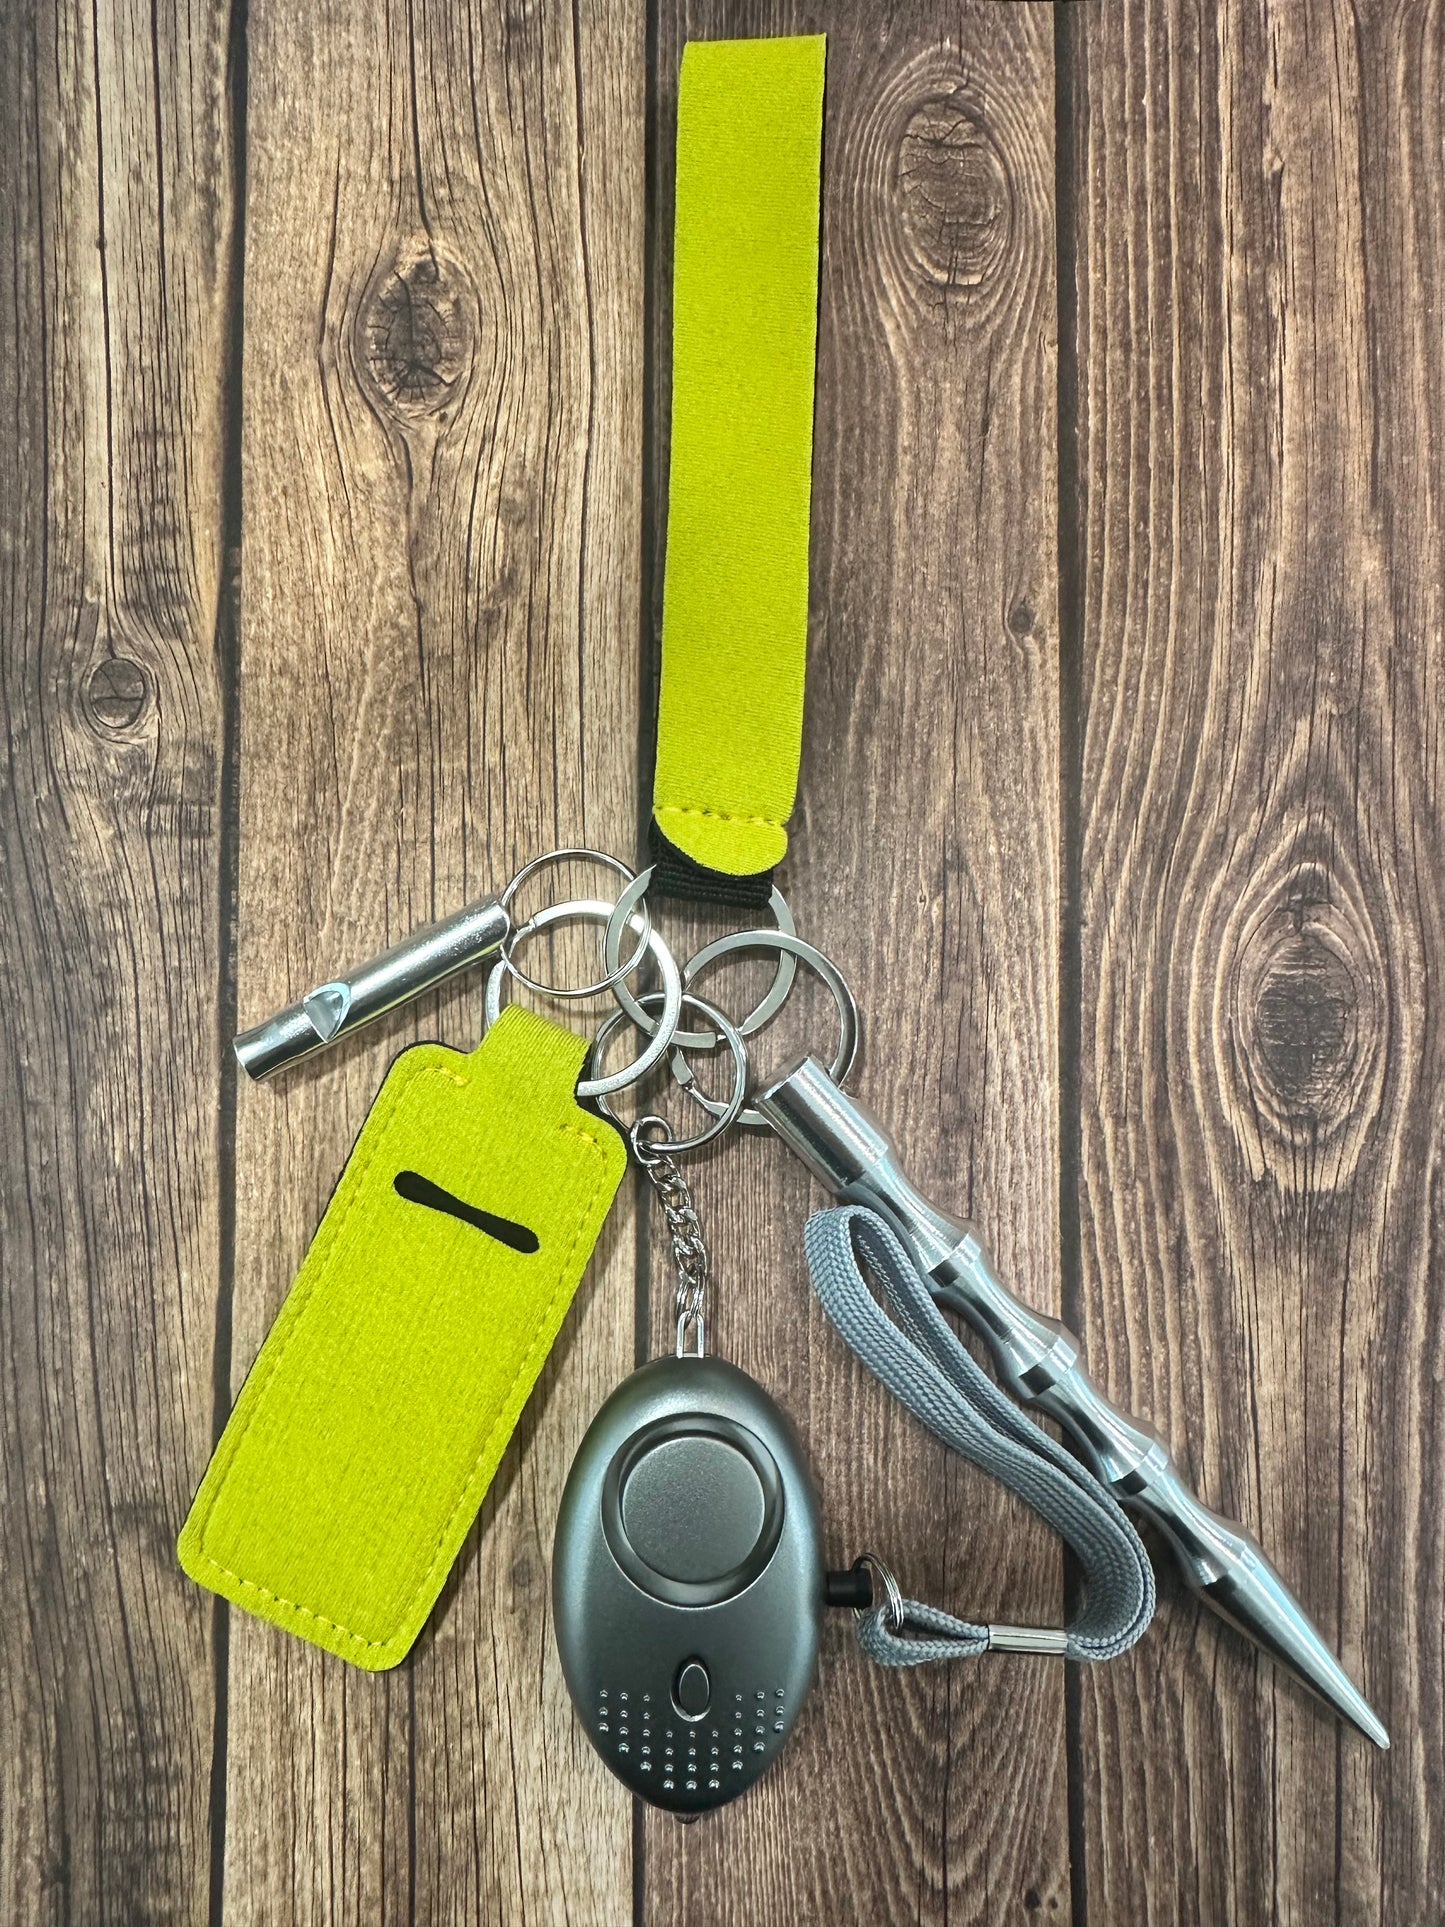 Basic safety keychain